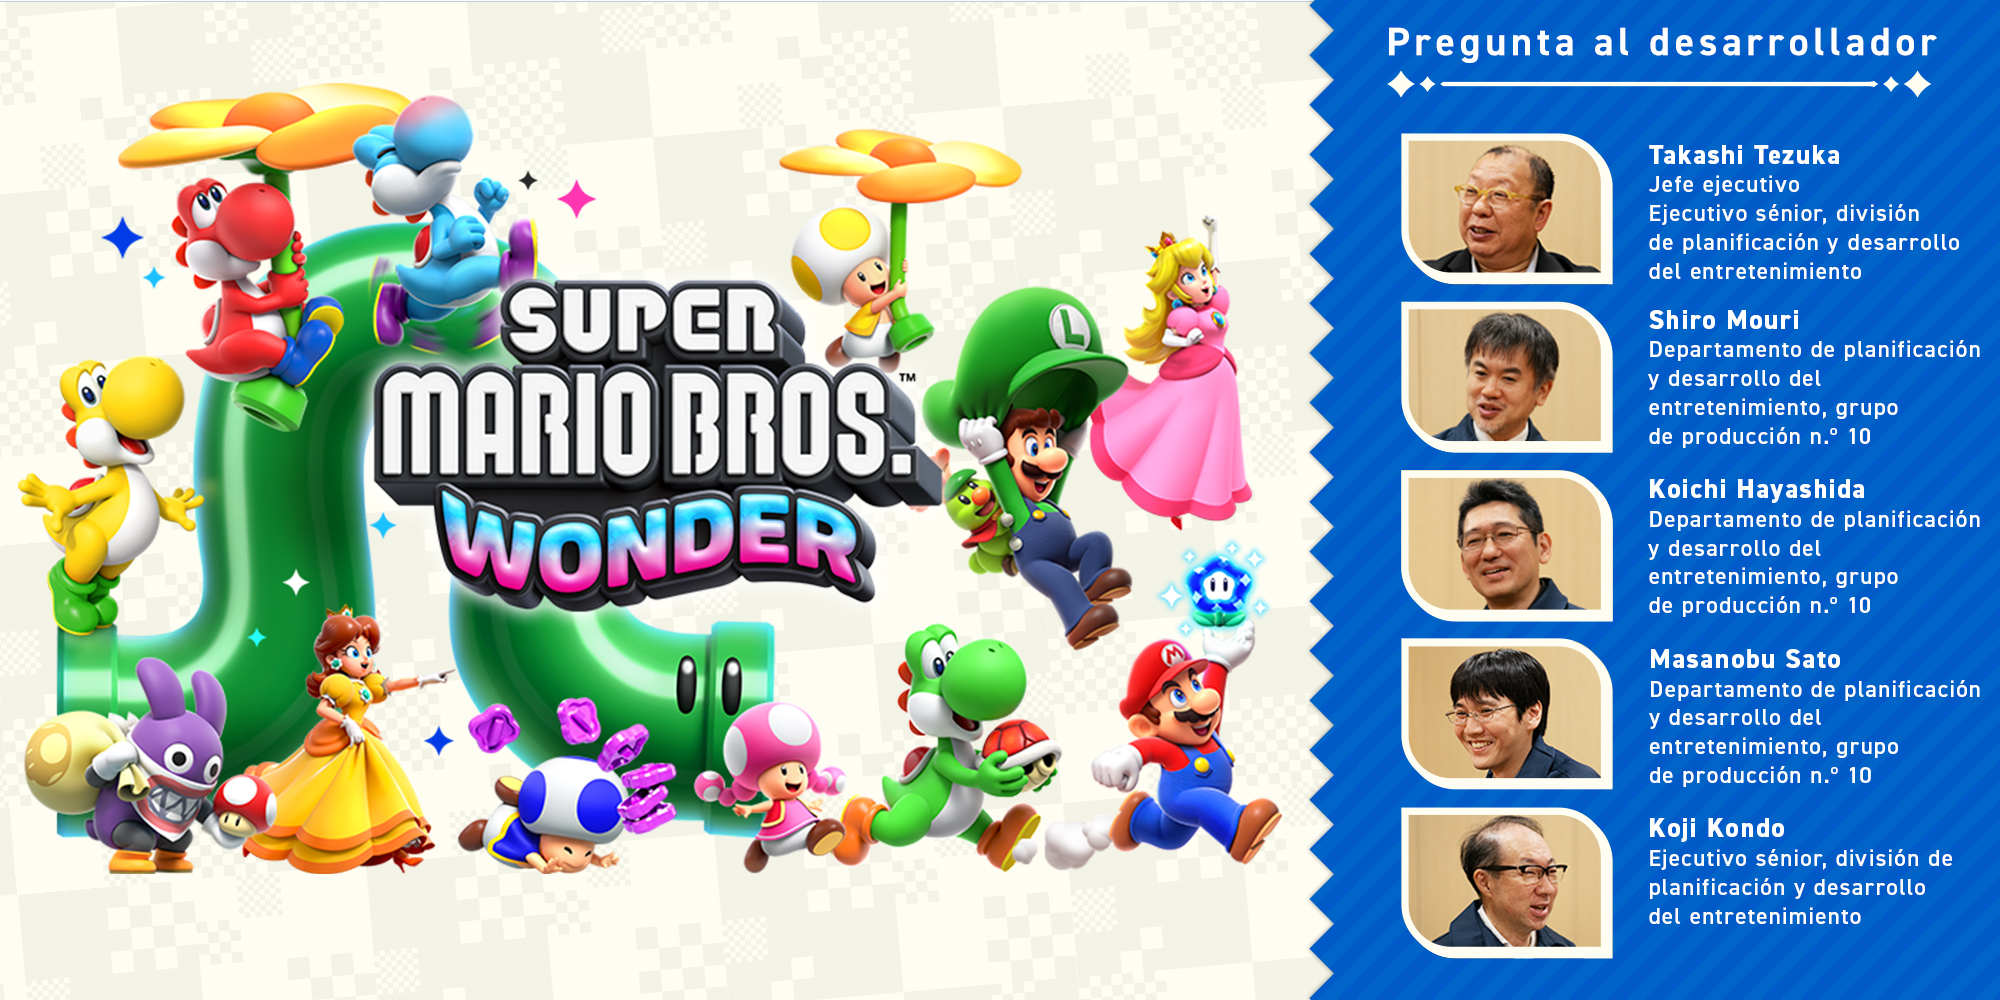 Pregunta al desarrollador, volumen 11. Super Mario Bros. Wonder – Capítulo 4